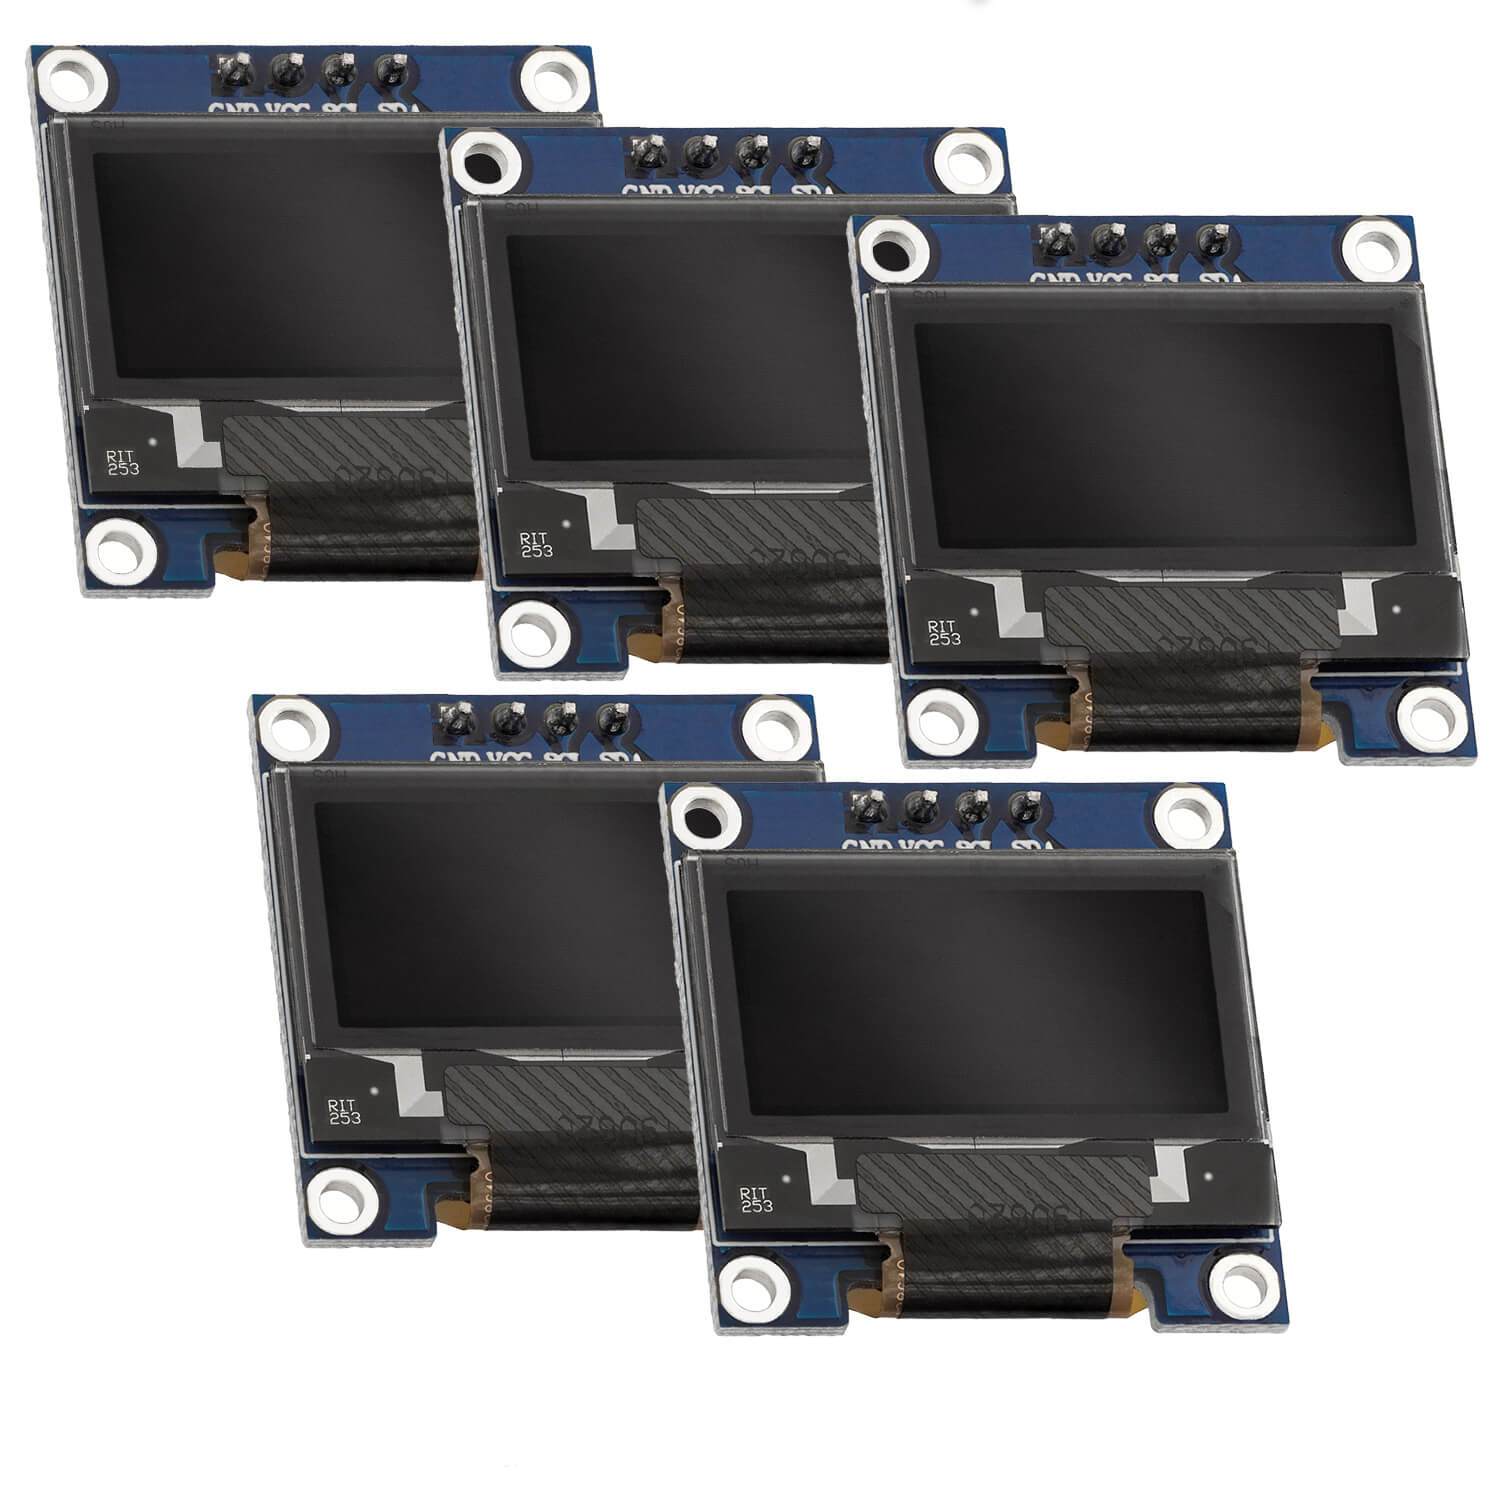 0,96 Zoll OLED SSD1306 Display I2C 128 x 64 Pixel kompatibel mit Arduino und Raspberry Pi